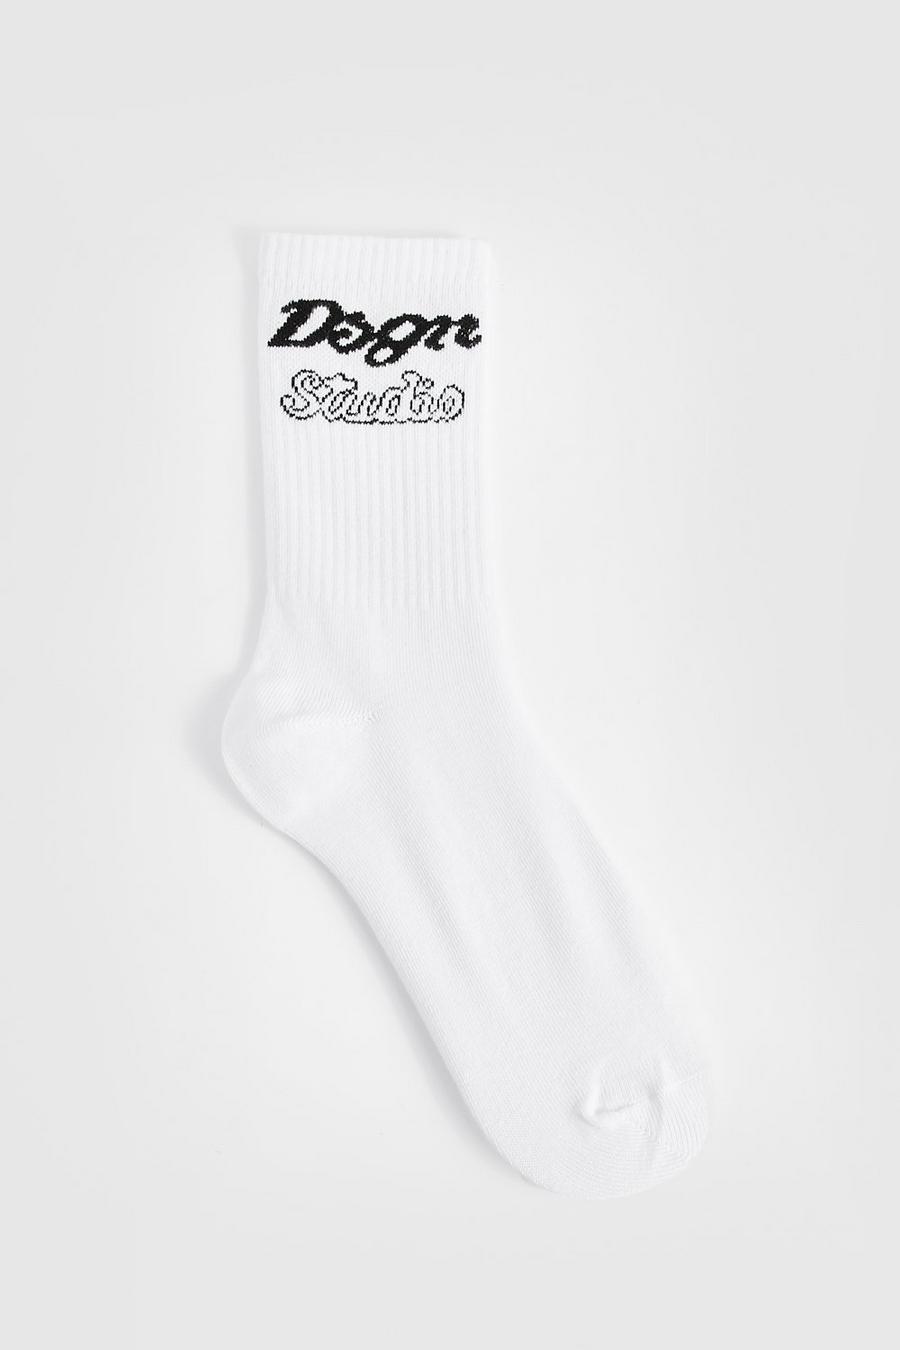 White vit Single Mono Dsgn Studio Slogan Sports Sock